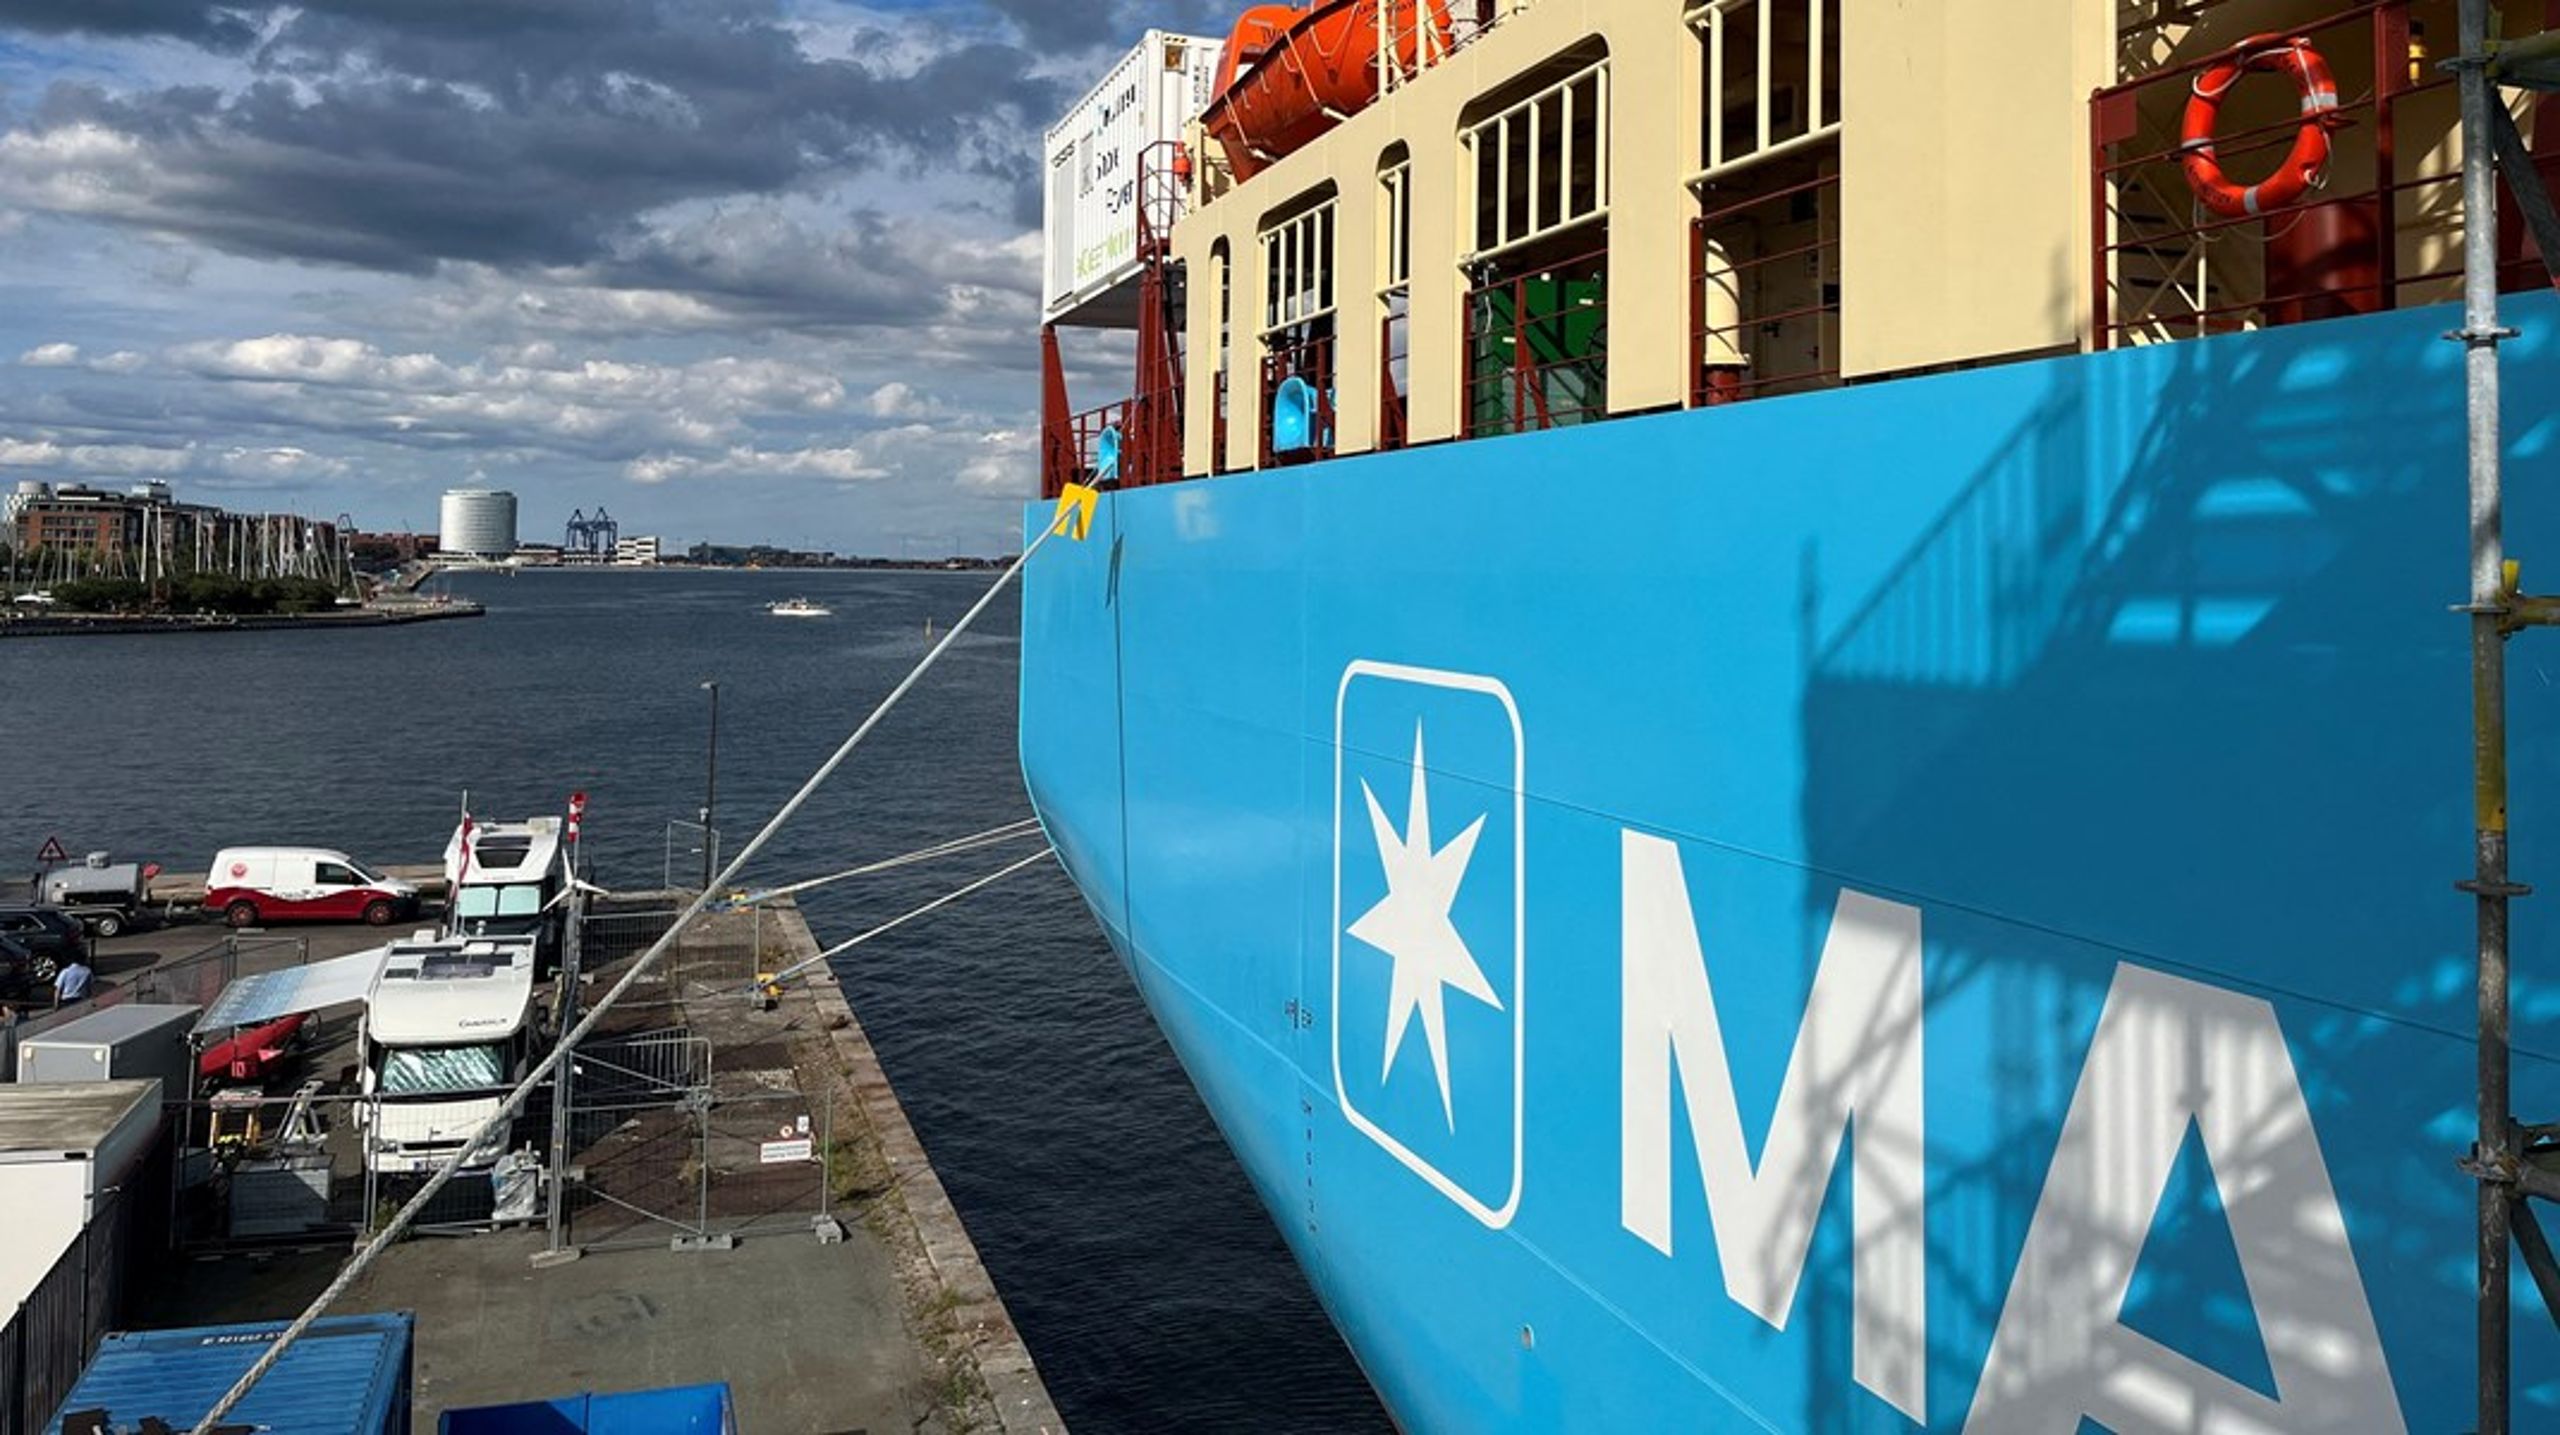 <span>Laura Mærsk – verdens første containerskib, der kan sejle på grøn e-metanol – blev navngivet af Ursula von der Leyen ved en ceremoni ved Langelinie i København. Det er&nbsp;et glimrende eksempel på, hvor meget det kan rykke, når en virksomhed som Mærsk går forrest, skriver Anne H. Steffensen.</span>